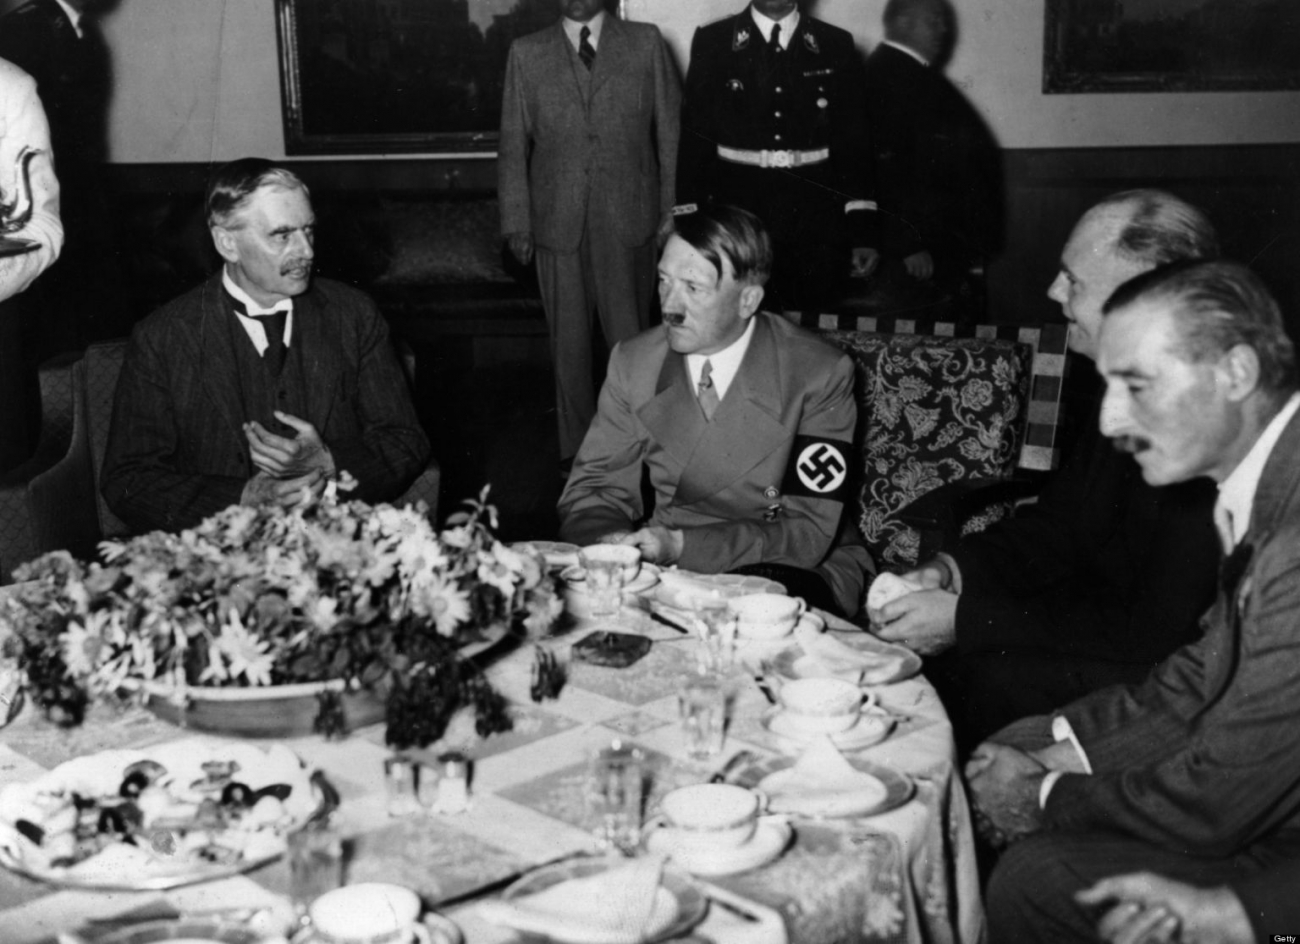 Hitler sice byl vegetarián, ale alespoň s tím nebyl otravný vůči hostům a nechával jim servírovat maso.